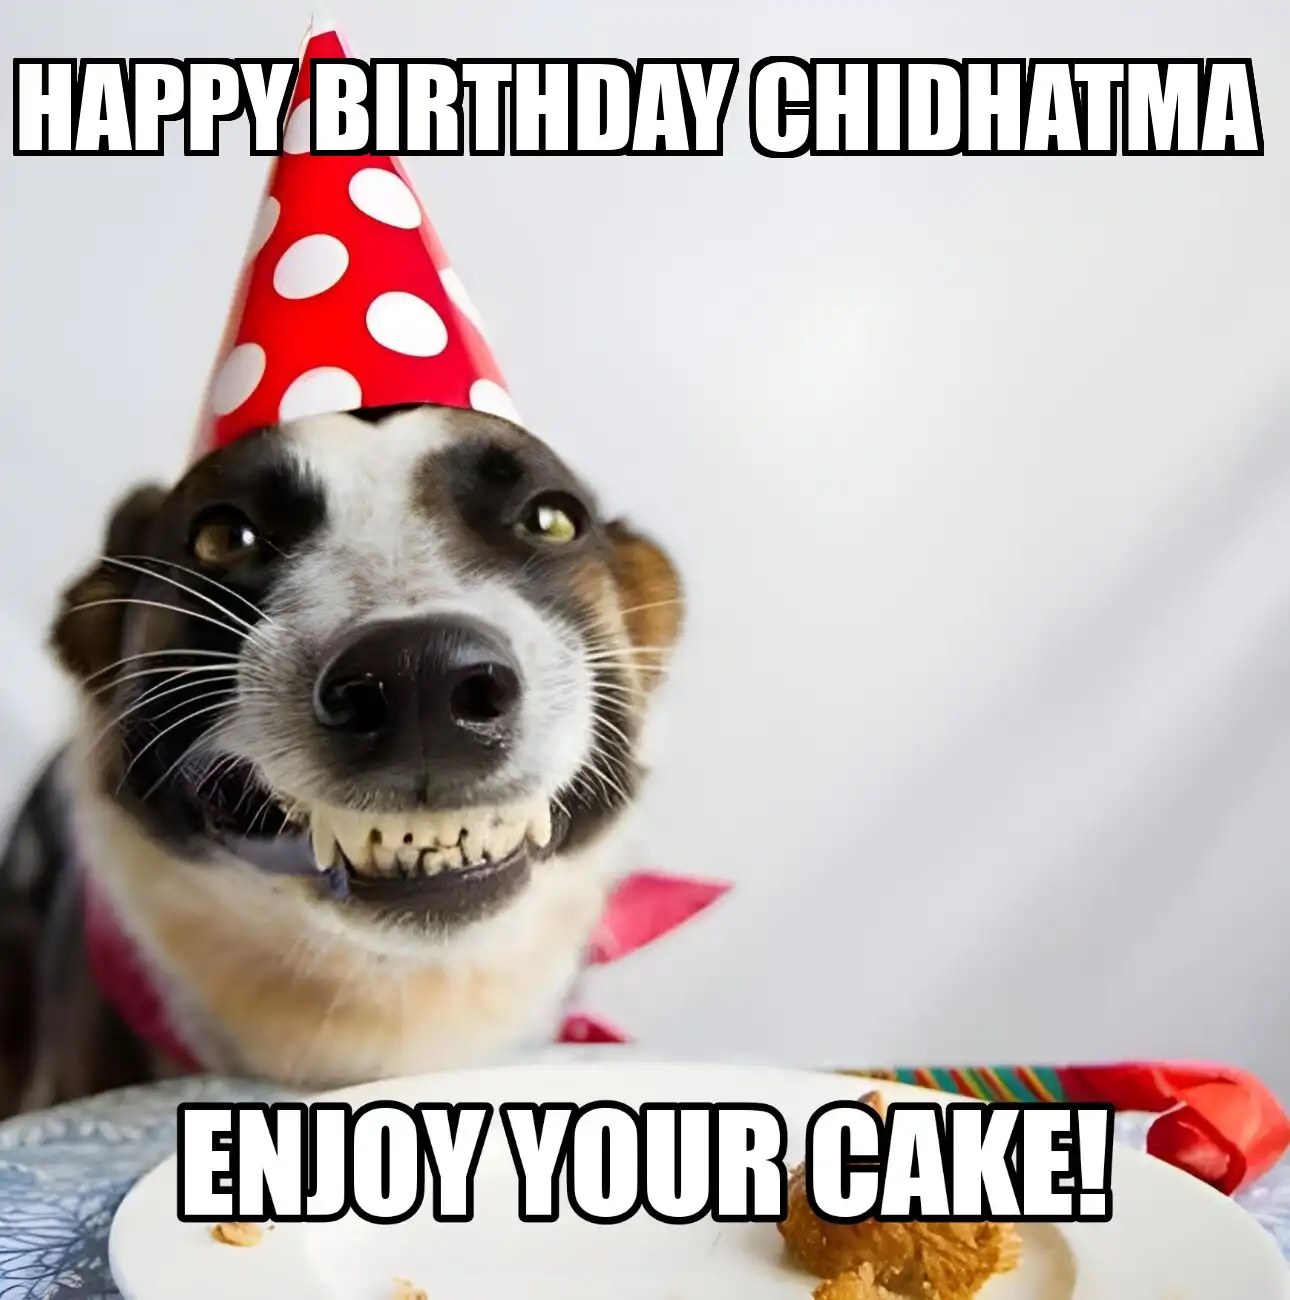 Happy Birthday Chidhatma Enjoy Your Cake Dog Meme